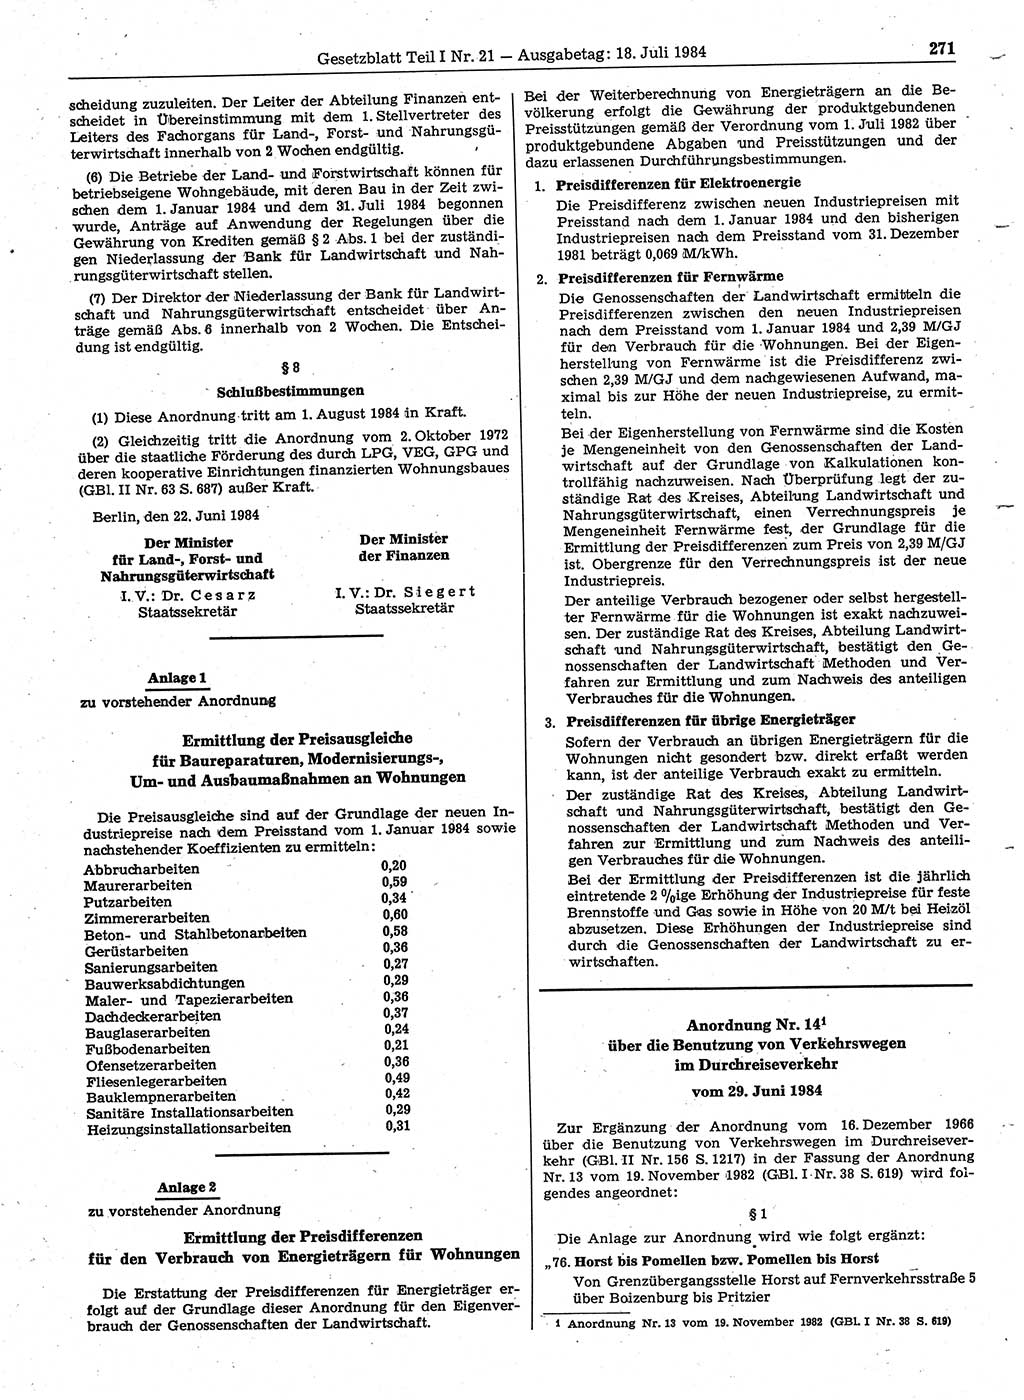 Gesetzblatt (GBl.) der Deutschen Demokratischen Republik (DDR) Teil Ⅰ 1984, Seite 271 (GBl. DDR Ⅰ 1984, S. 271)